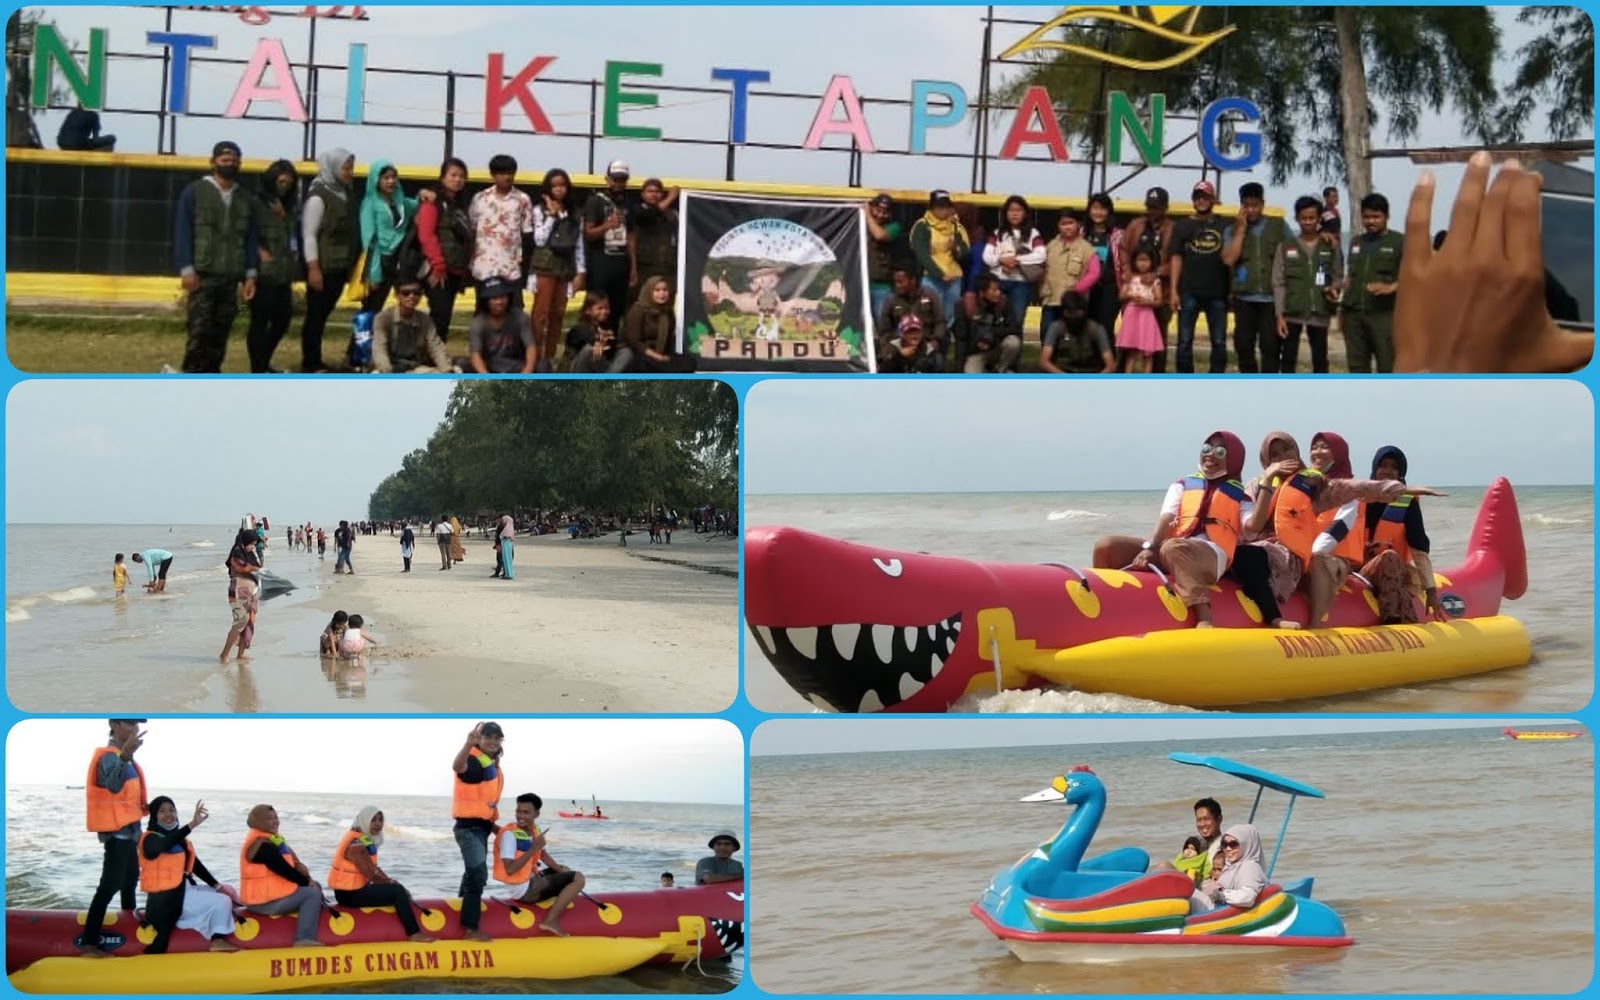 Semenjak Dikelola BUMDes Cingam Jaya, Objek Wisata Pantai